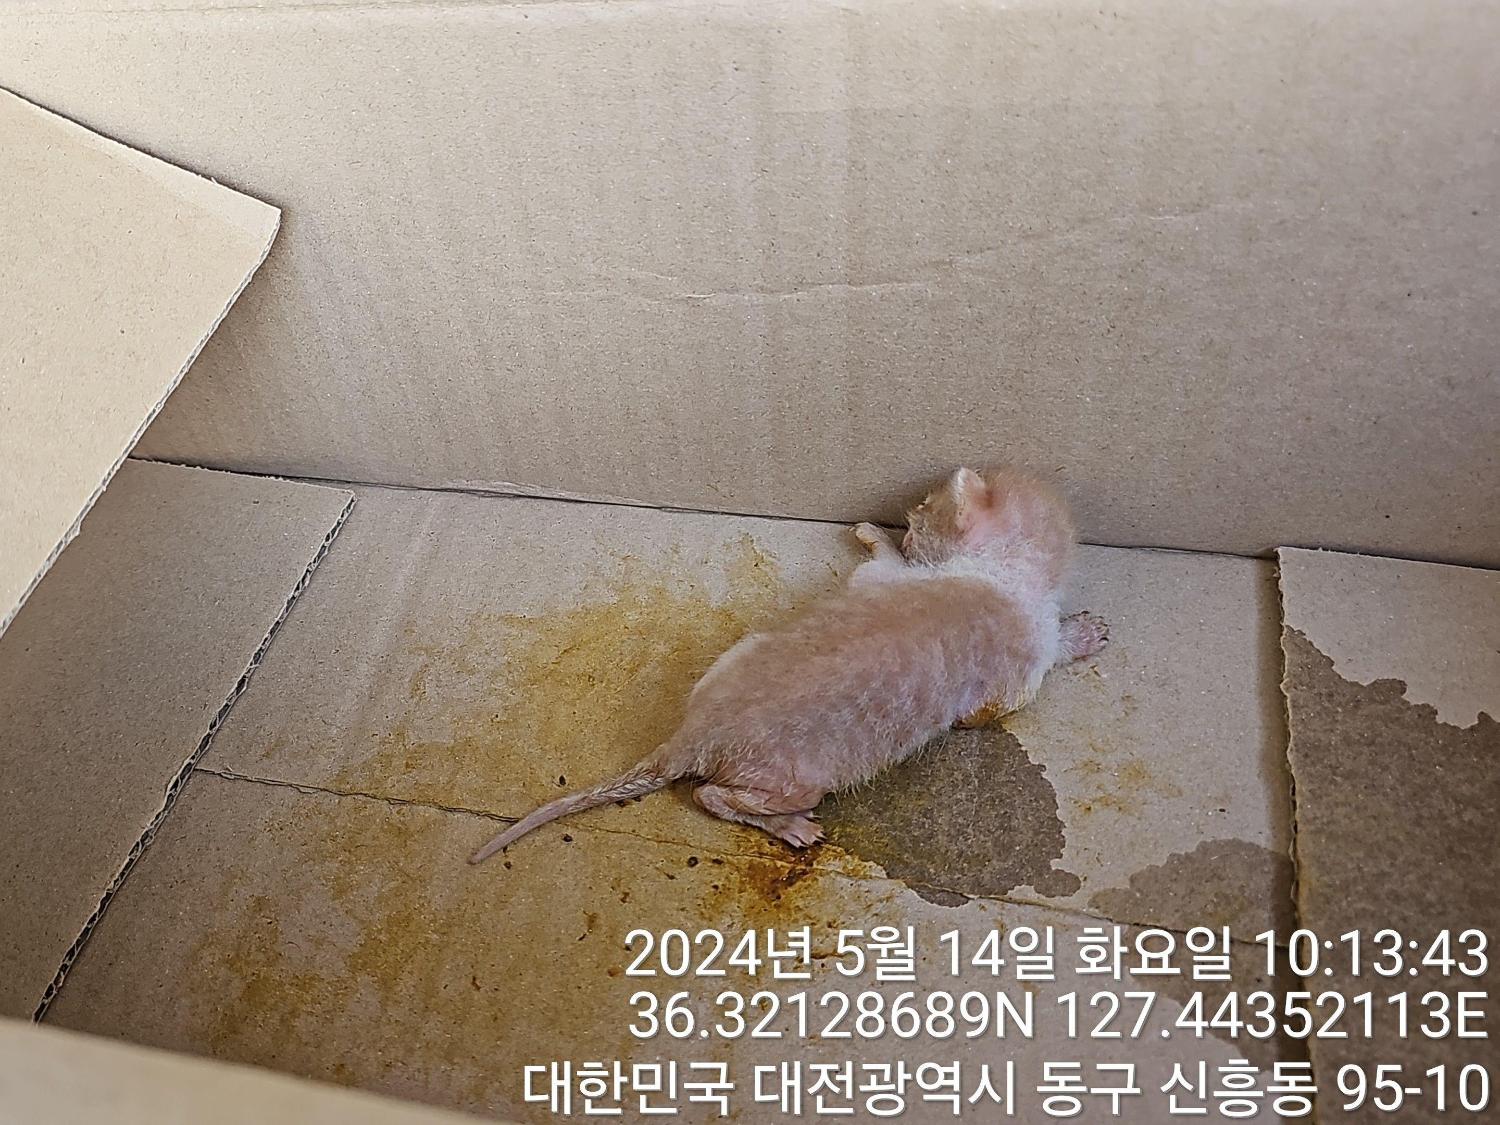 공고 번호가 대전-동구-2024-00129인 한국 고양이 동물 사진